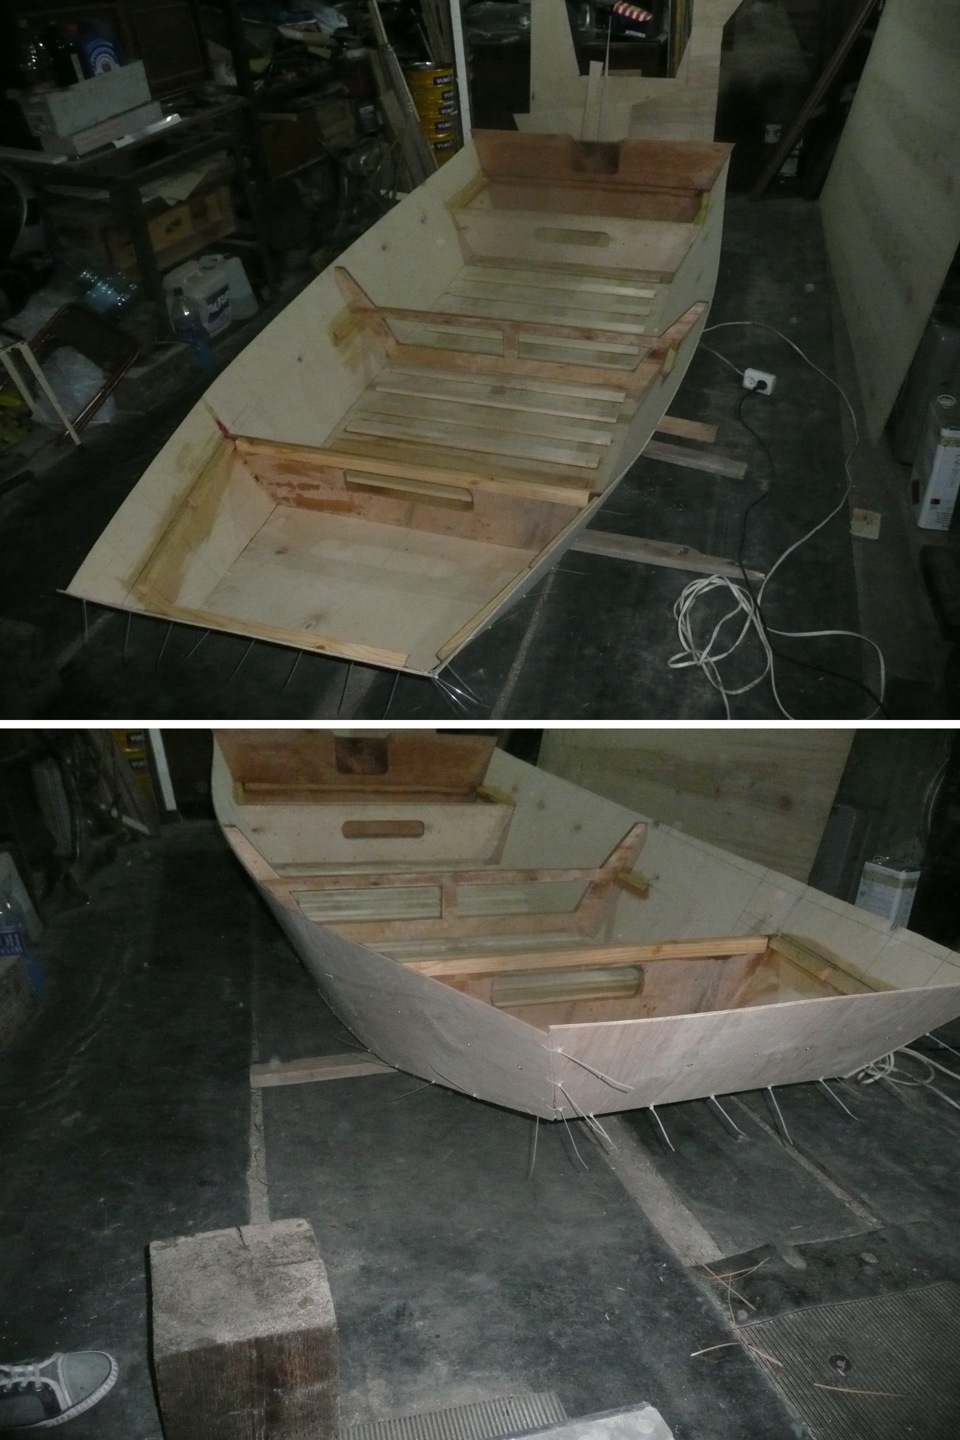 Проекты лодок из дерева и фанеры Майкла Сторера